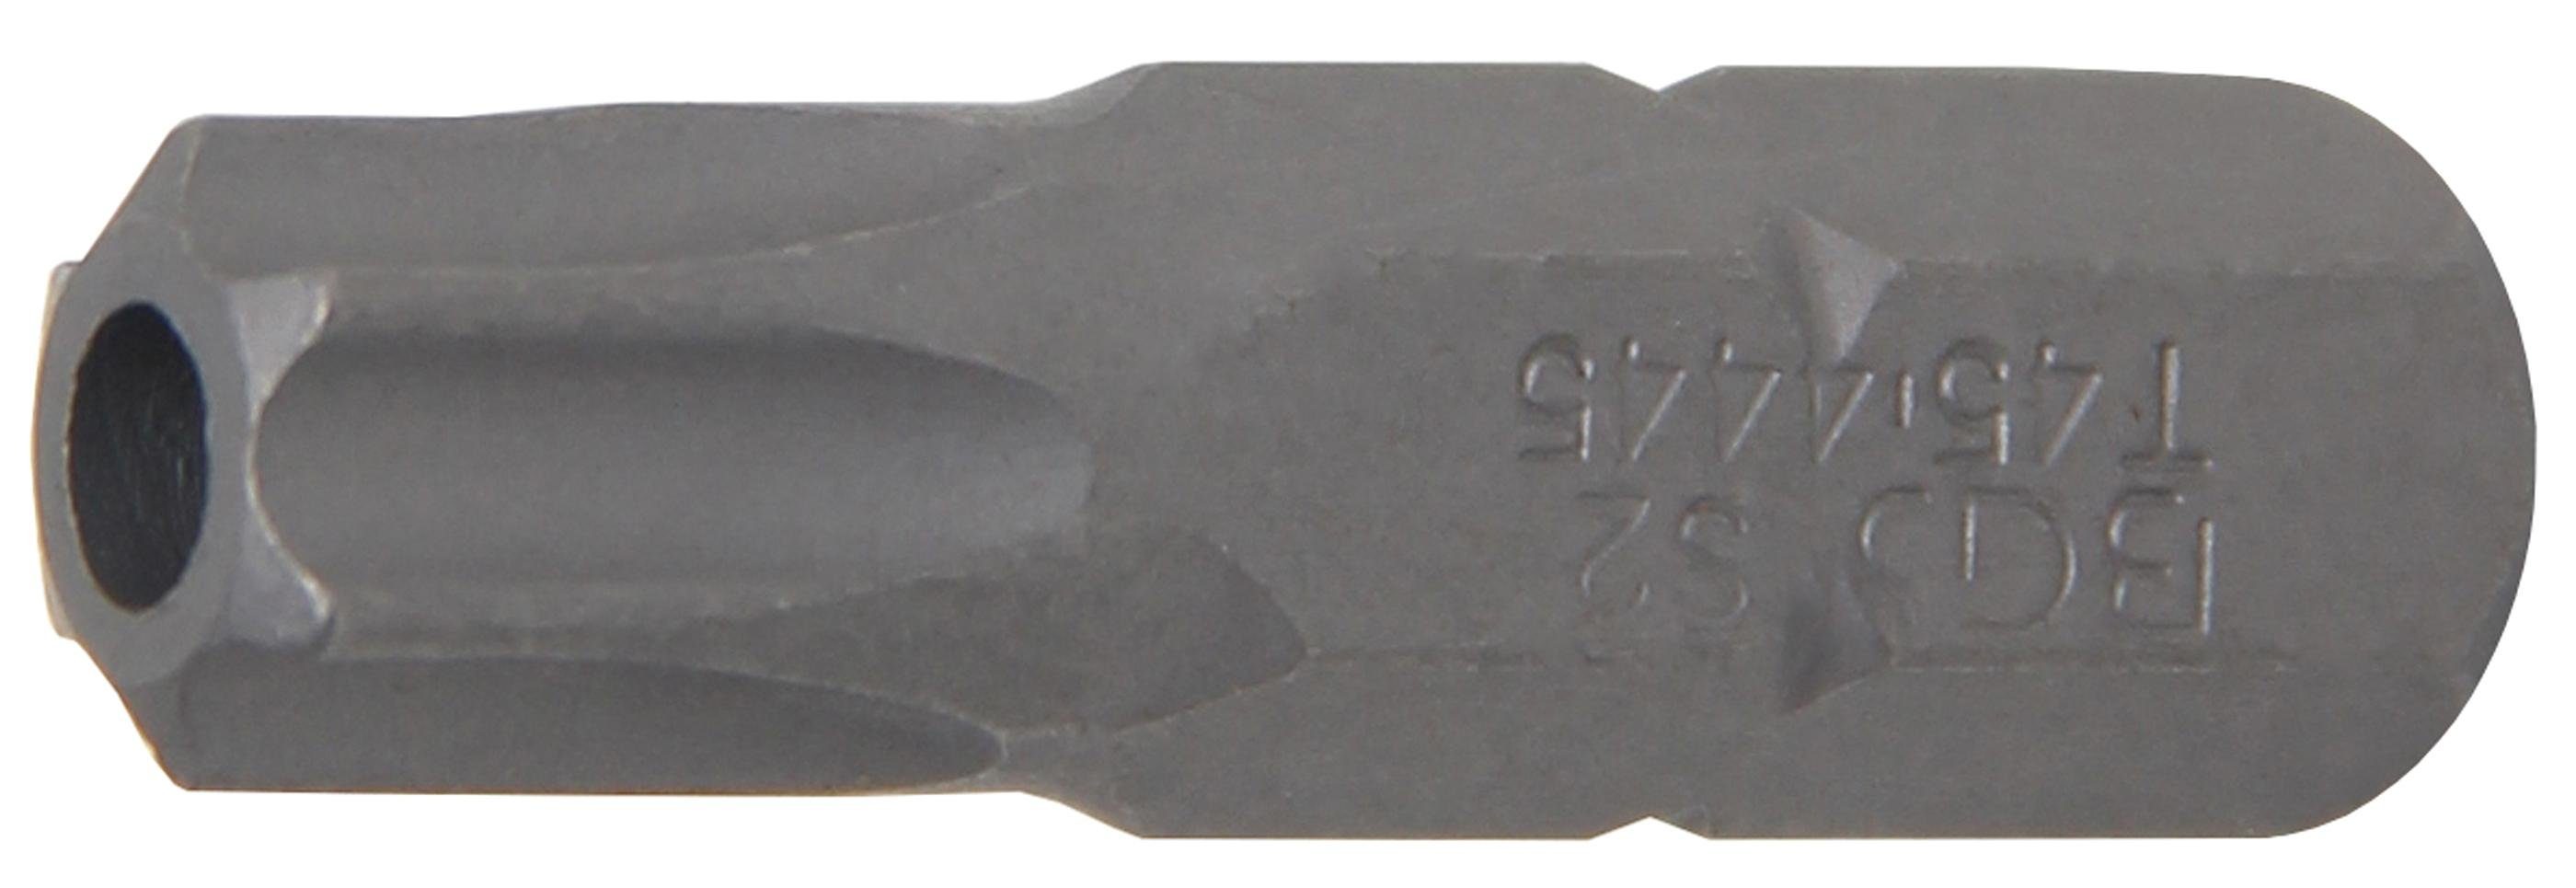 Antrieb Bit-Schraubendreher 8 (5/16), mm mit 30 BGS T45 Länge T-Profil technic (für Bit, mm, Außensechskant Bohrung Torx)